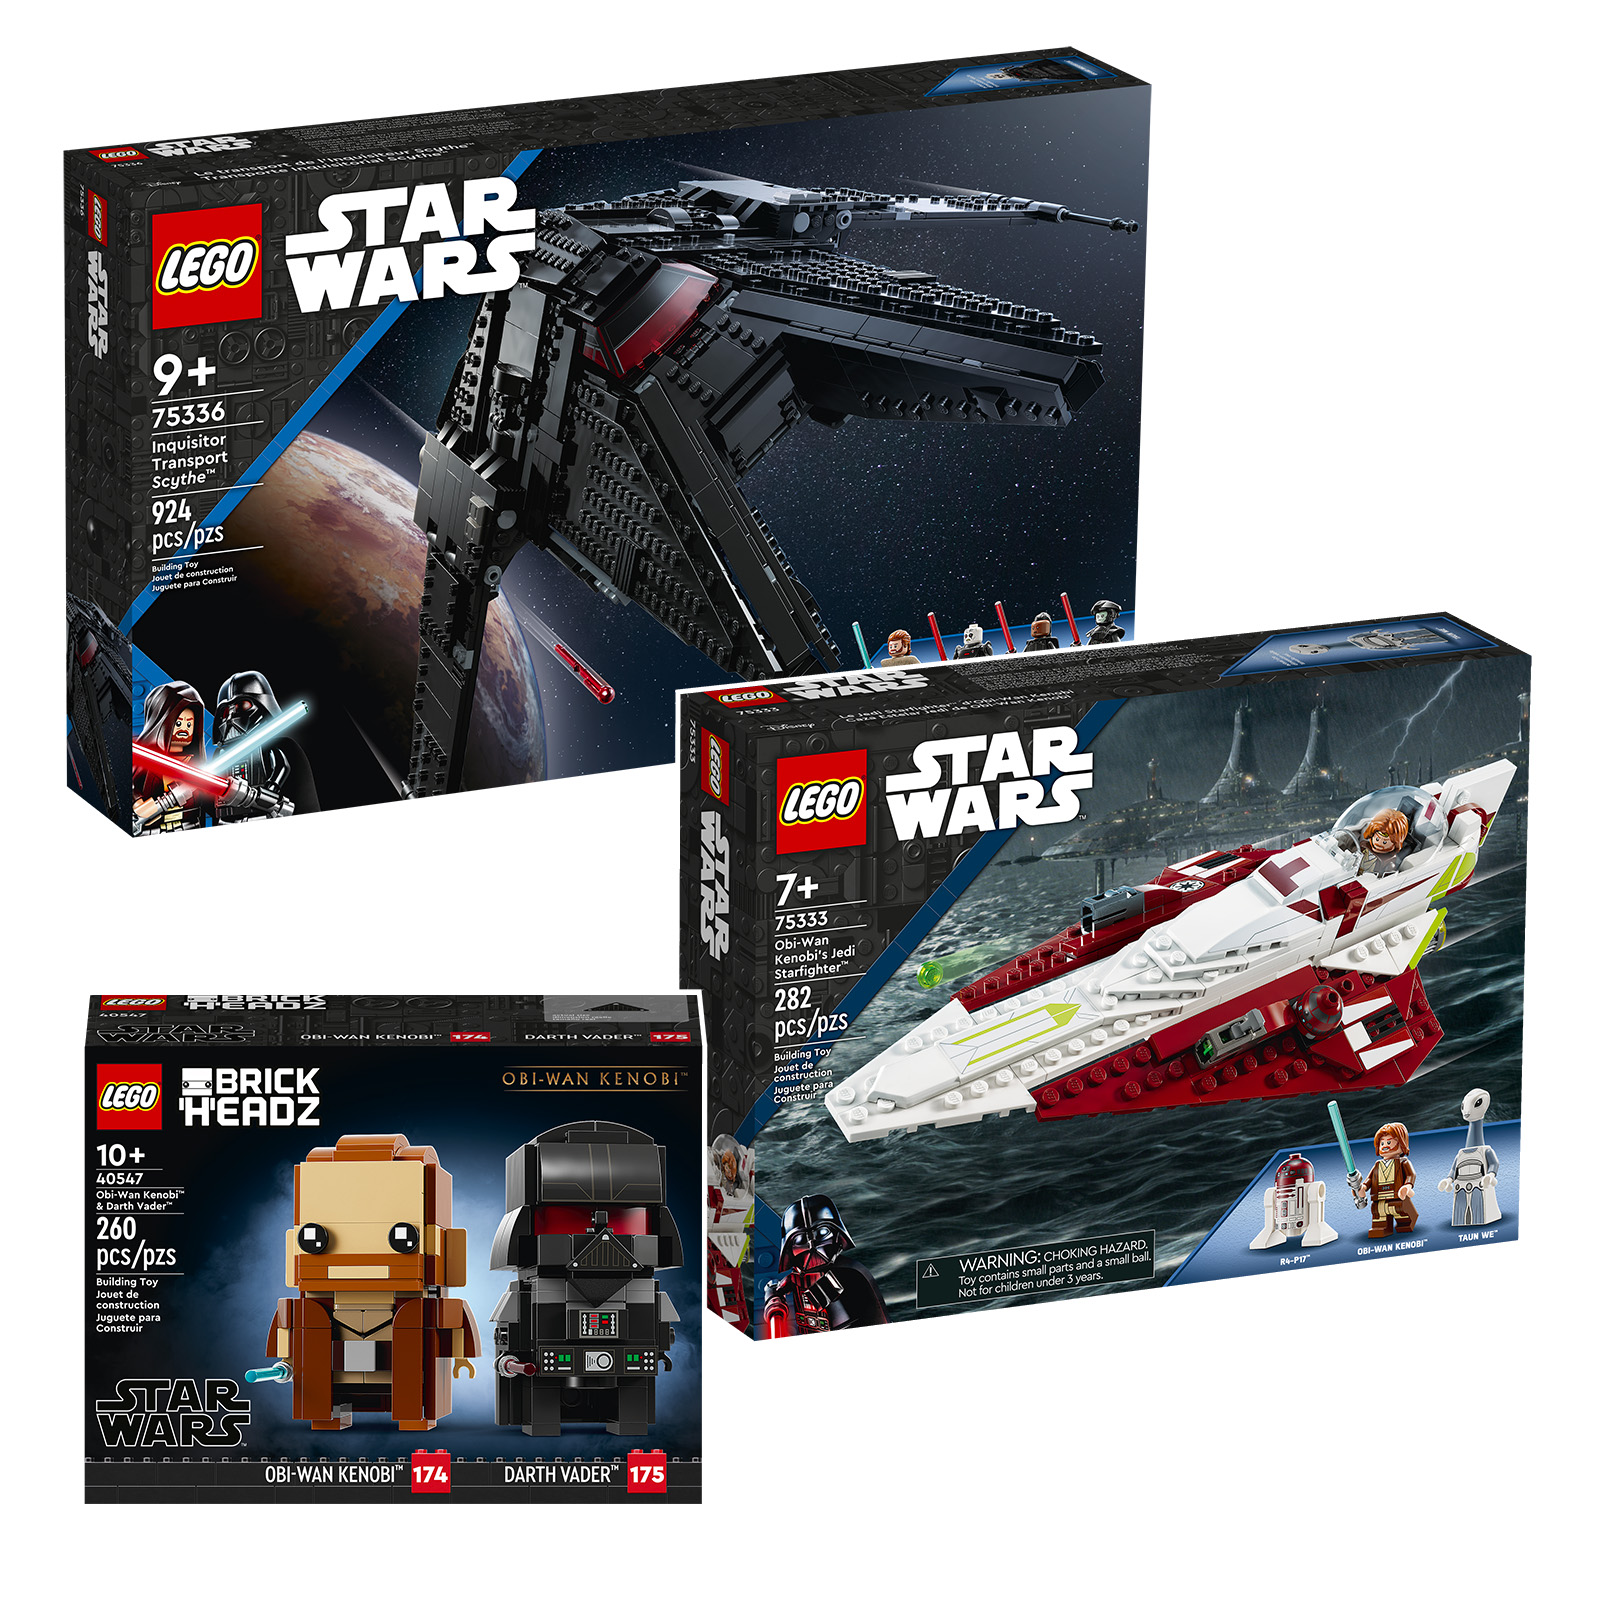 LEGO Star Wars mới cho nửa cuối năm 2022: Obi-Wan Kenobi trong tất cả các loại nước sốt